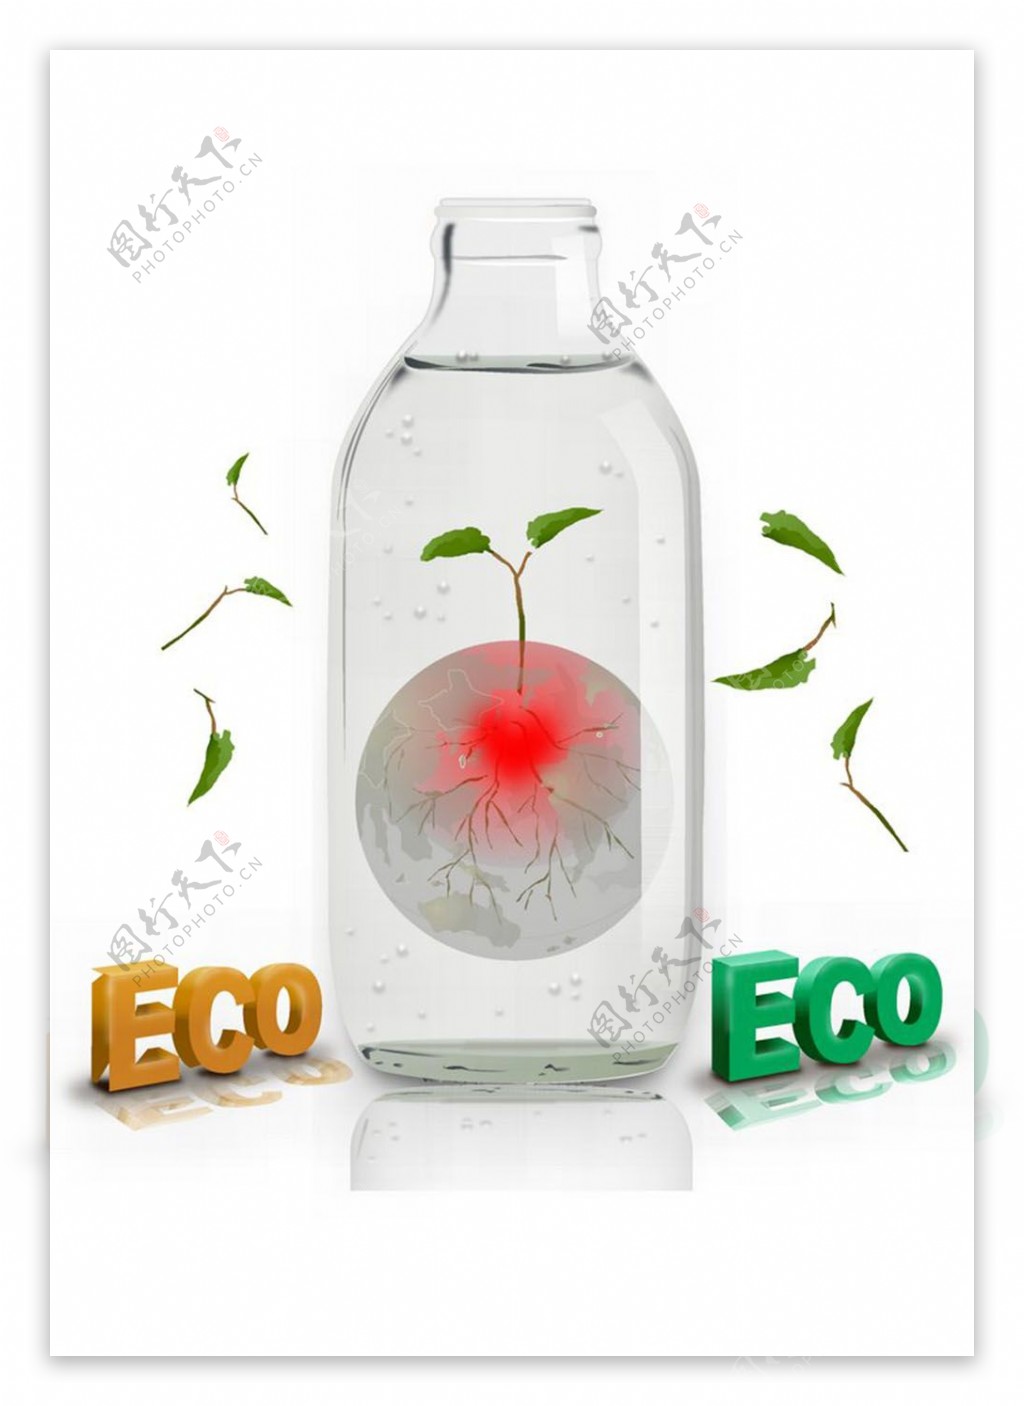 生态环保海报图片